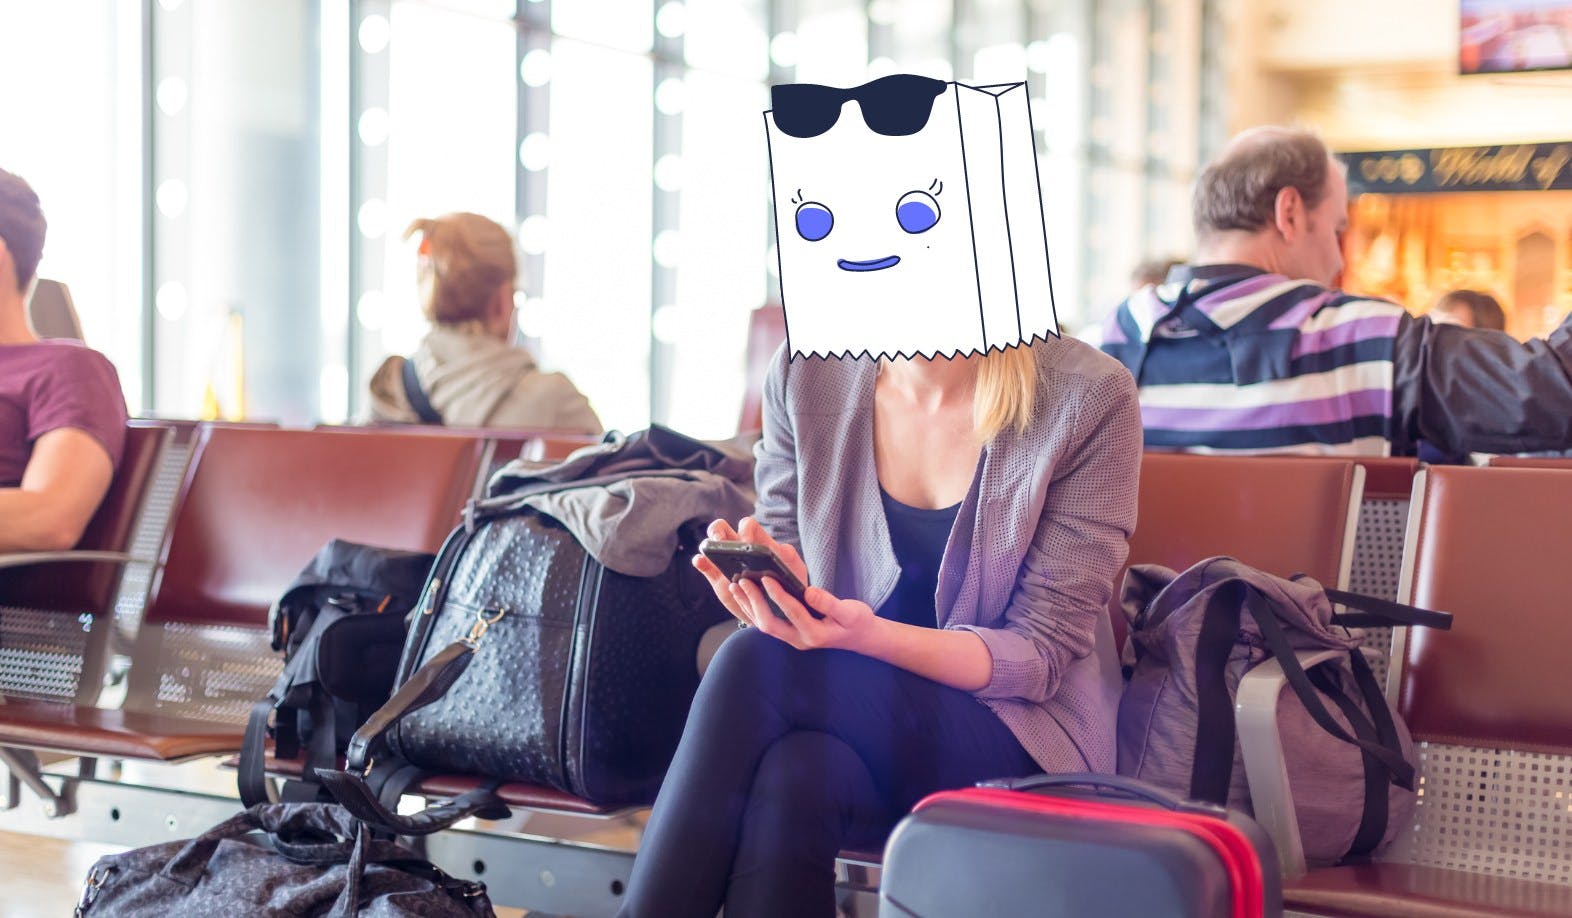 Blog-Beitragsbild "Wie man E-Mail-Aliase zum Schutz der Privatsphäre verwendet": Wir sehen eine Frau, die in einem Wartebereich eines Flughafens sitzt. Sie durchstöbert ihr Handy und trägt eine illustrierte Tasche über dem Kopf, um anzudeuten, dass ihre Privatsphäre geschützt ist.